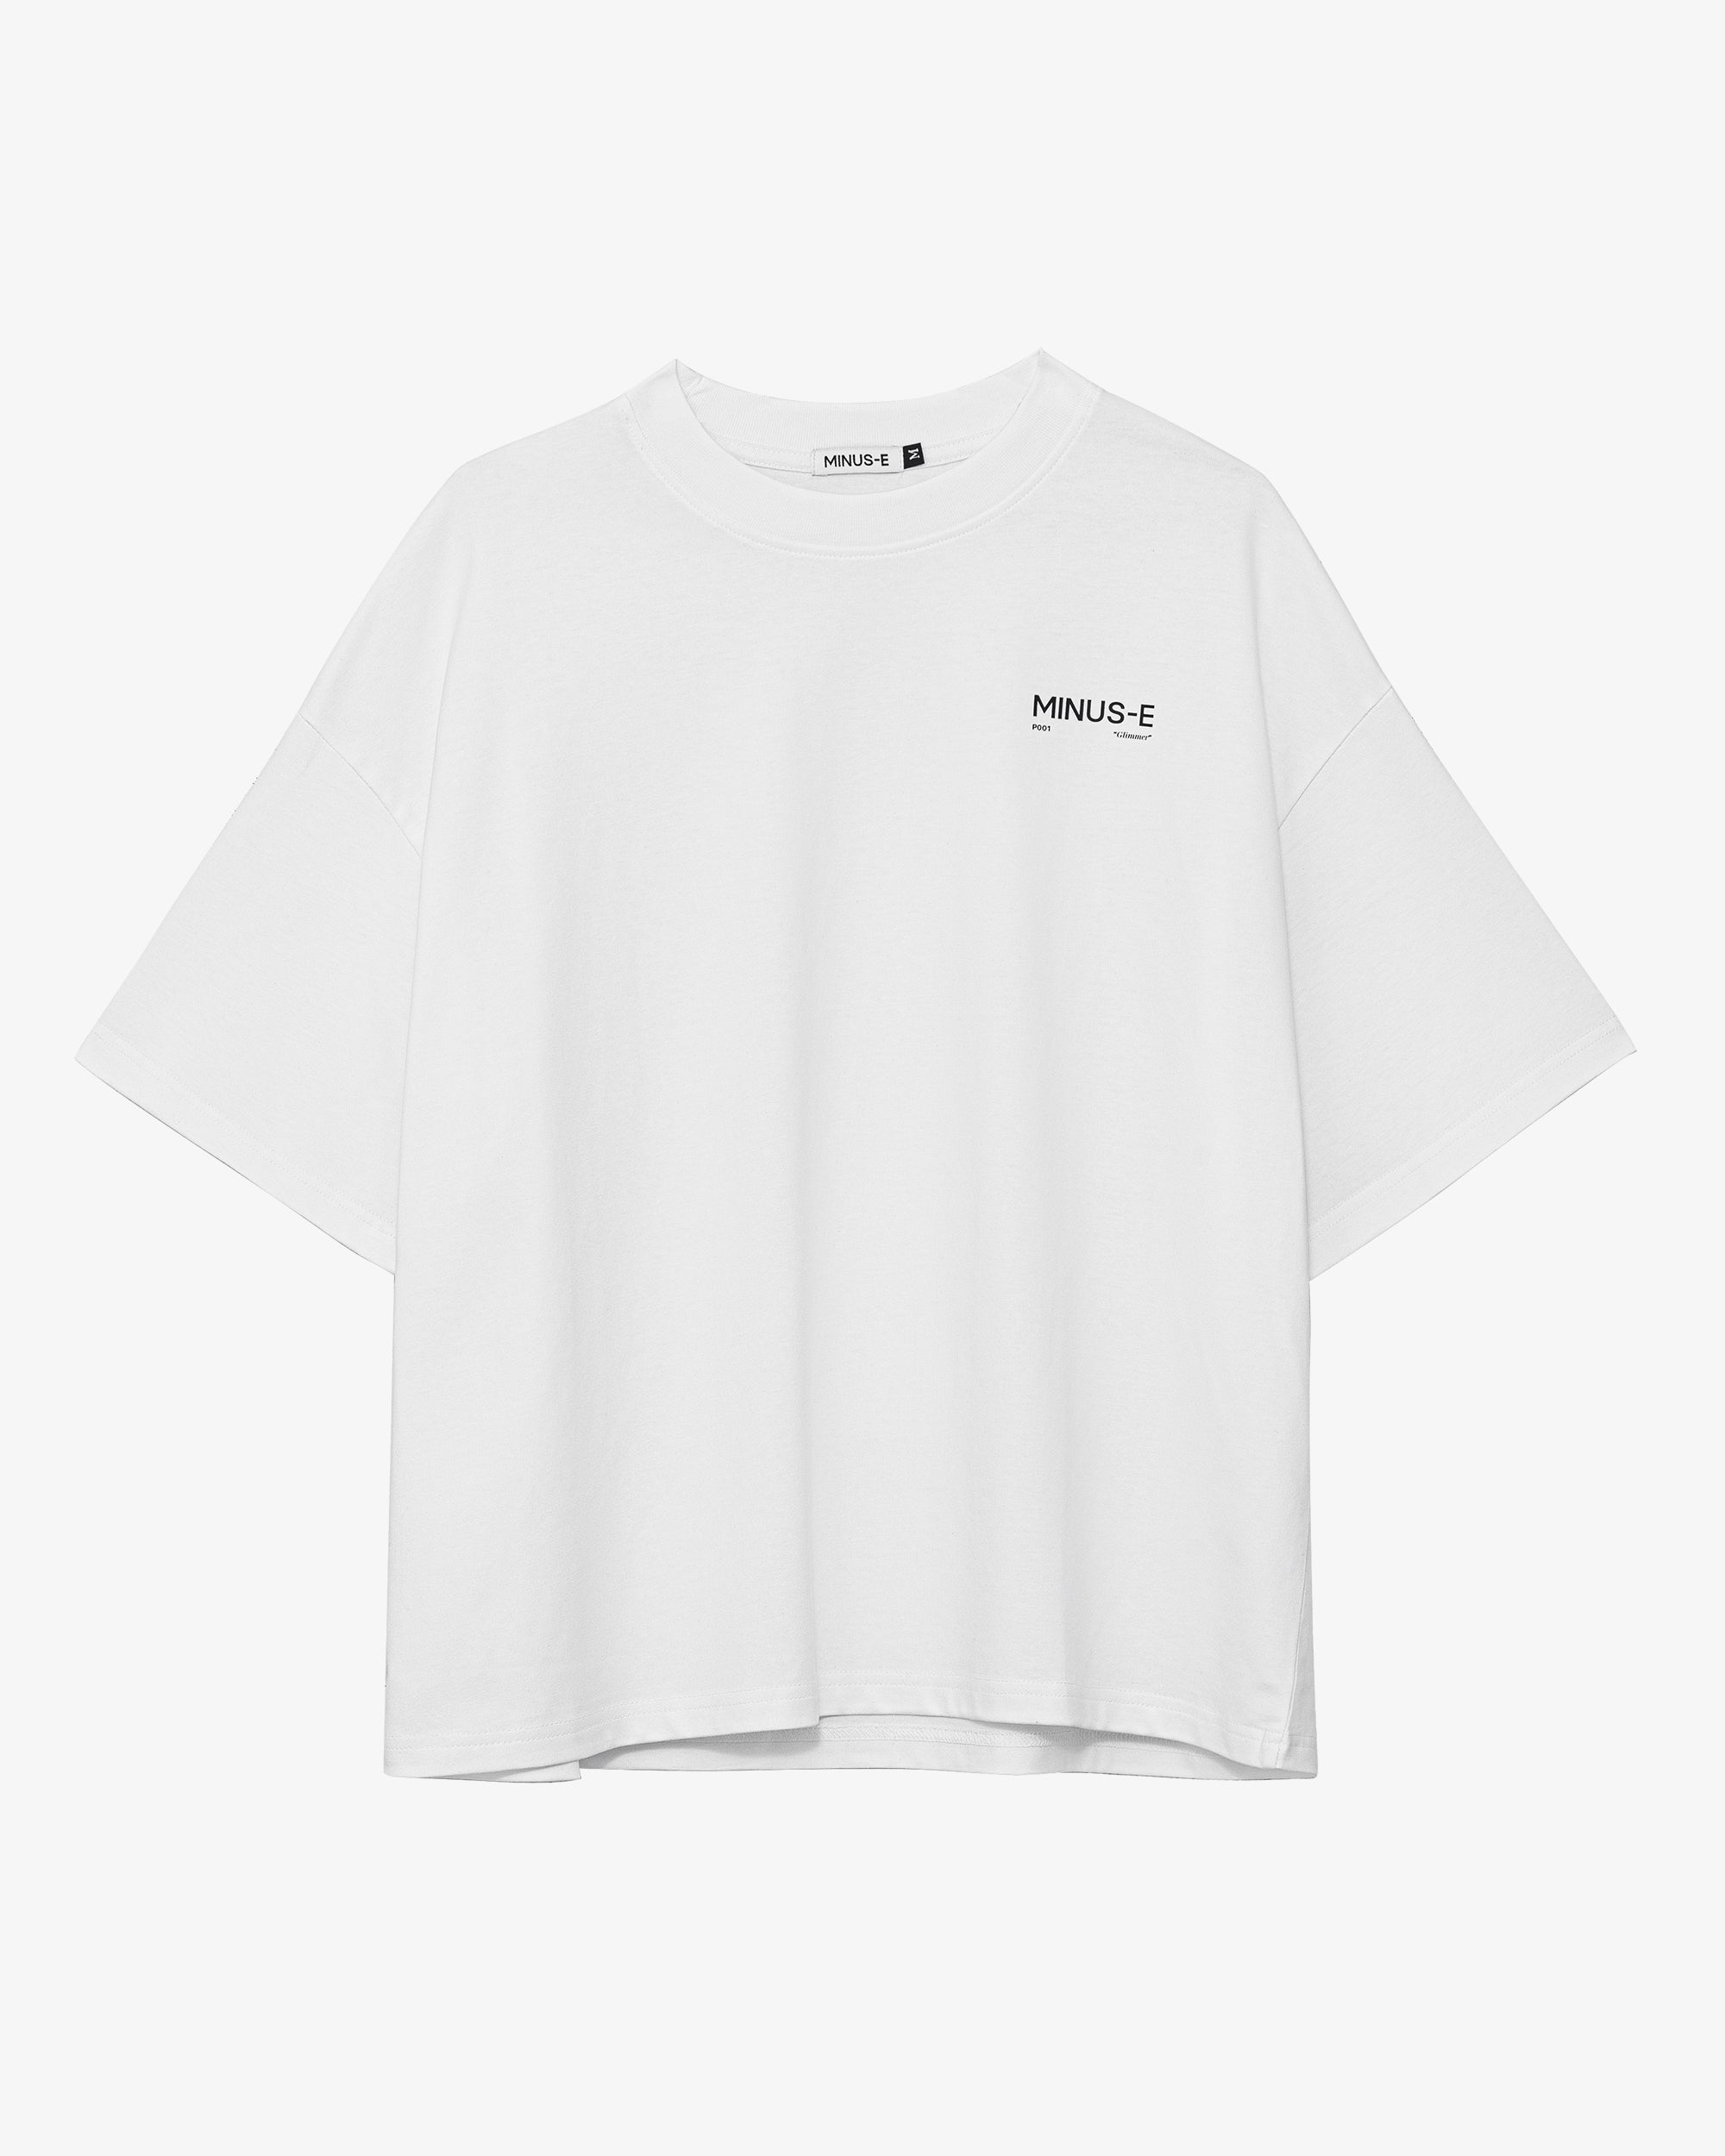 P001 "Glimmer" T-Shirt